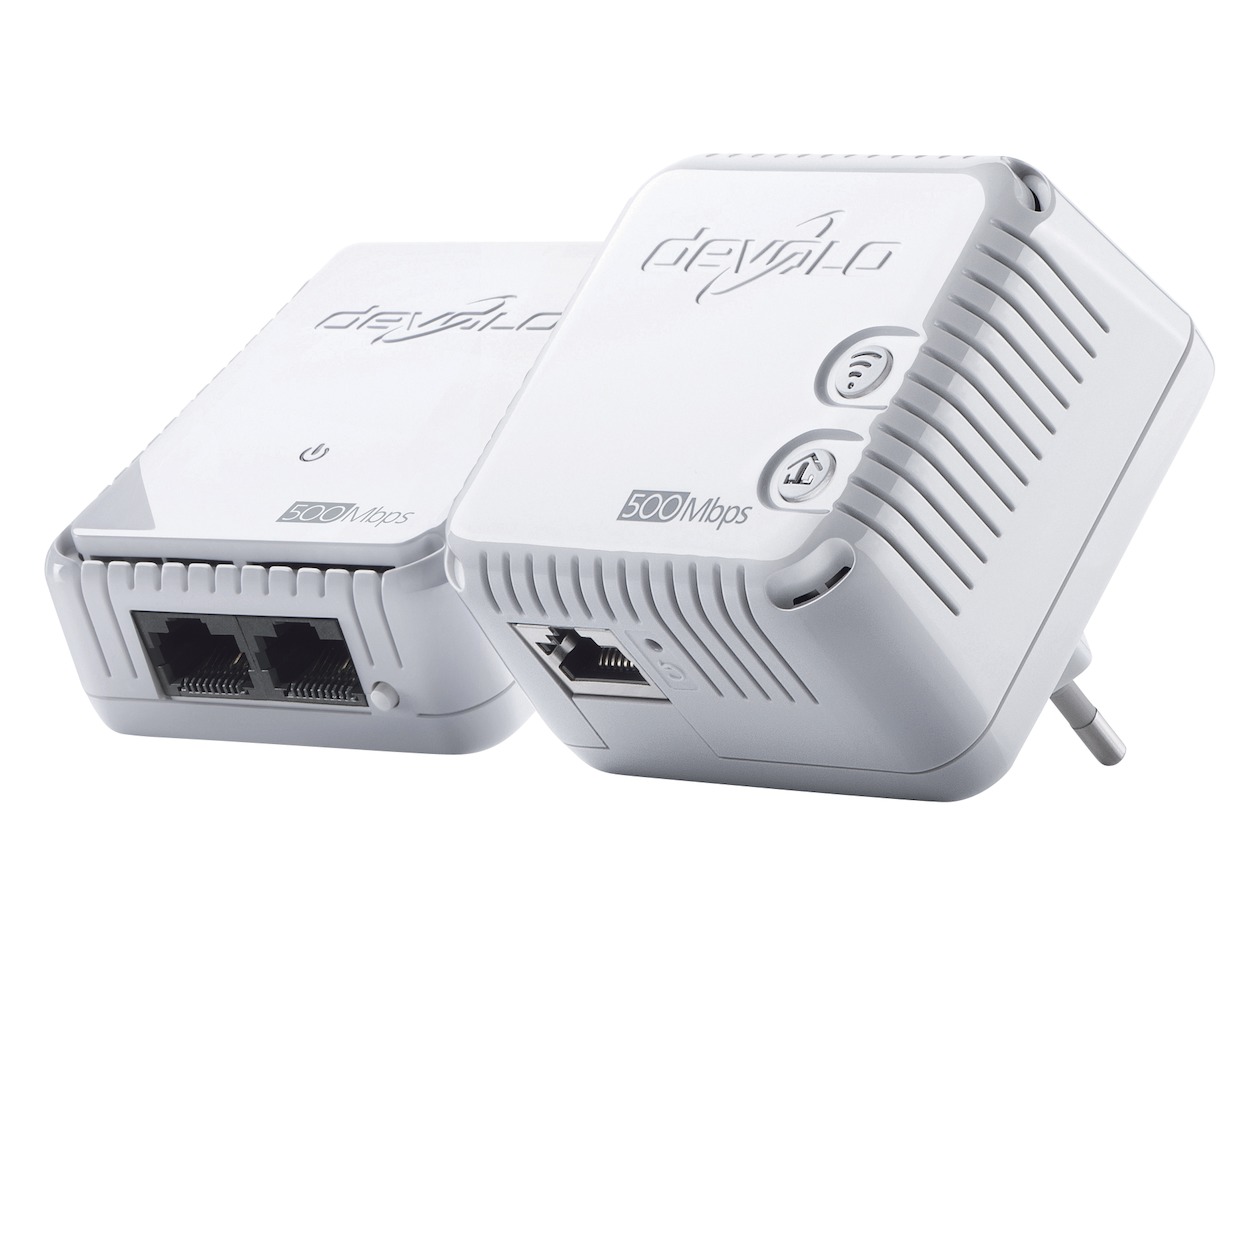 Telefoonleader - Devolo 500 WiFi Starter Kit Powerline